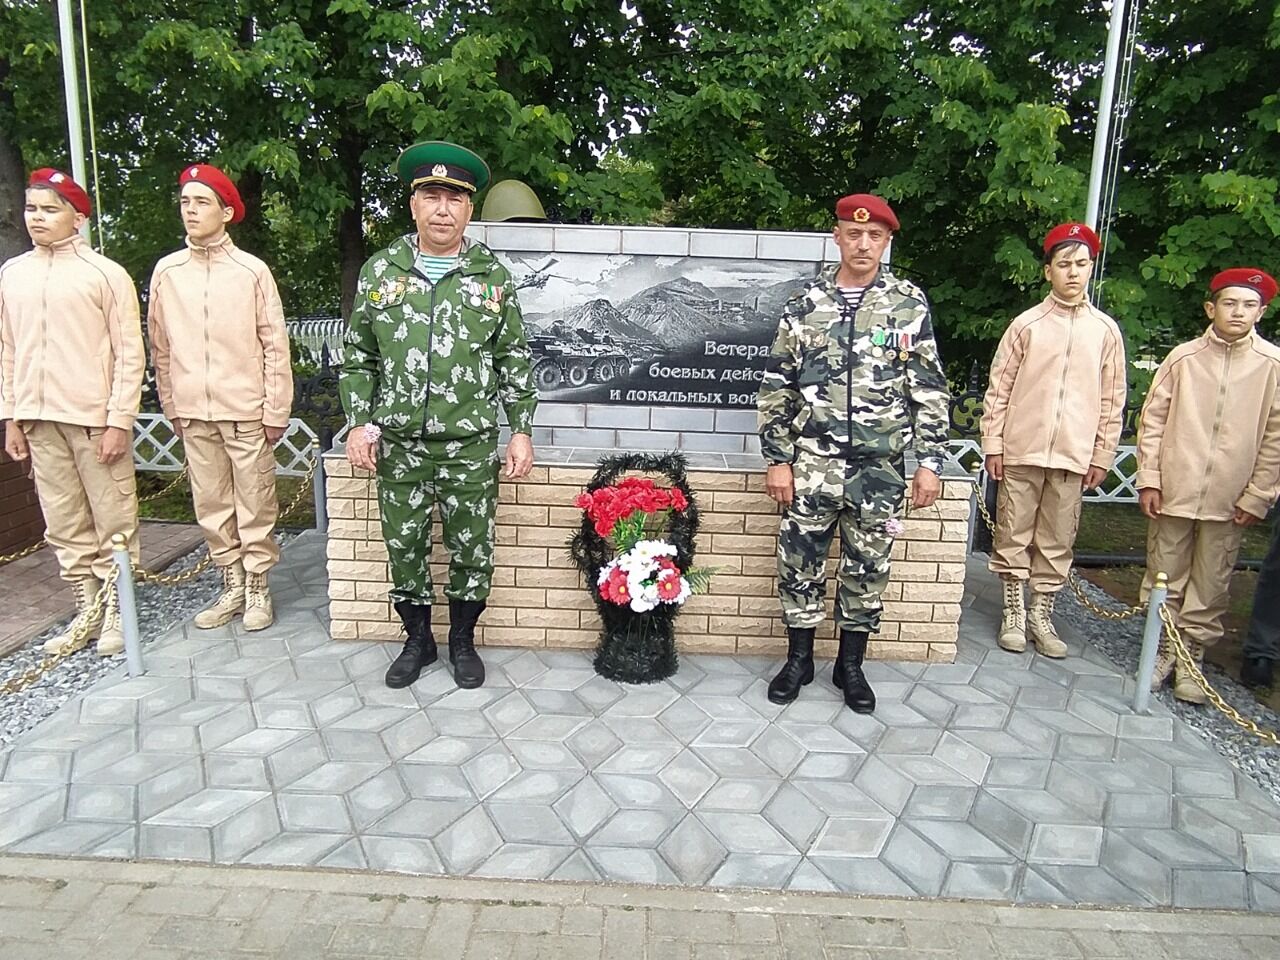 В Сарманово открыли мемориал ветеранам боевых действий и локальных войн